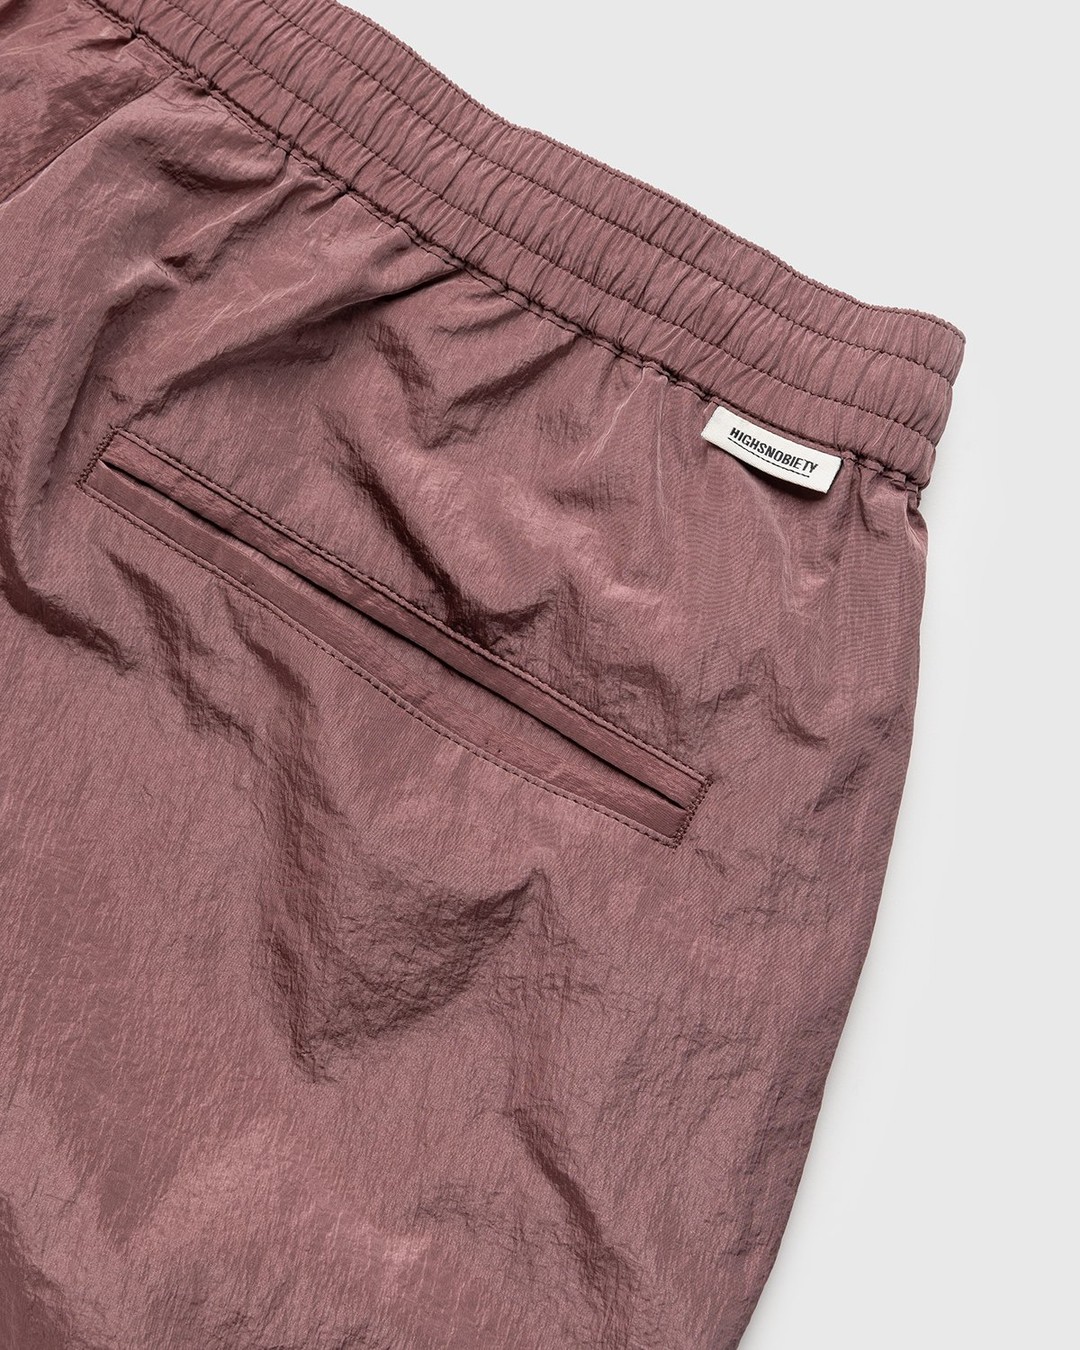 Highsnobiety – Crepe Nylon Shorts Rose Gold - Shorts - Pink - Image 3